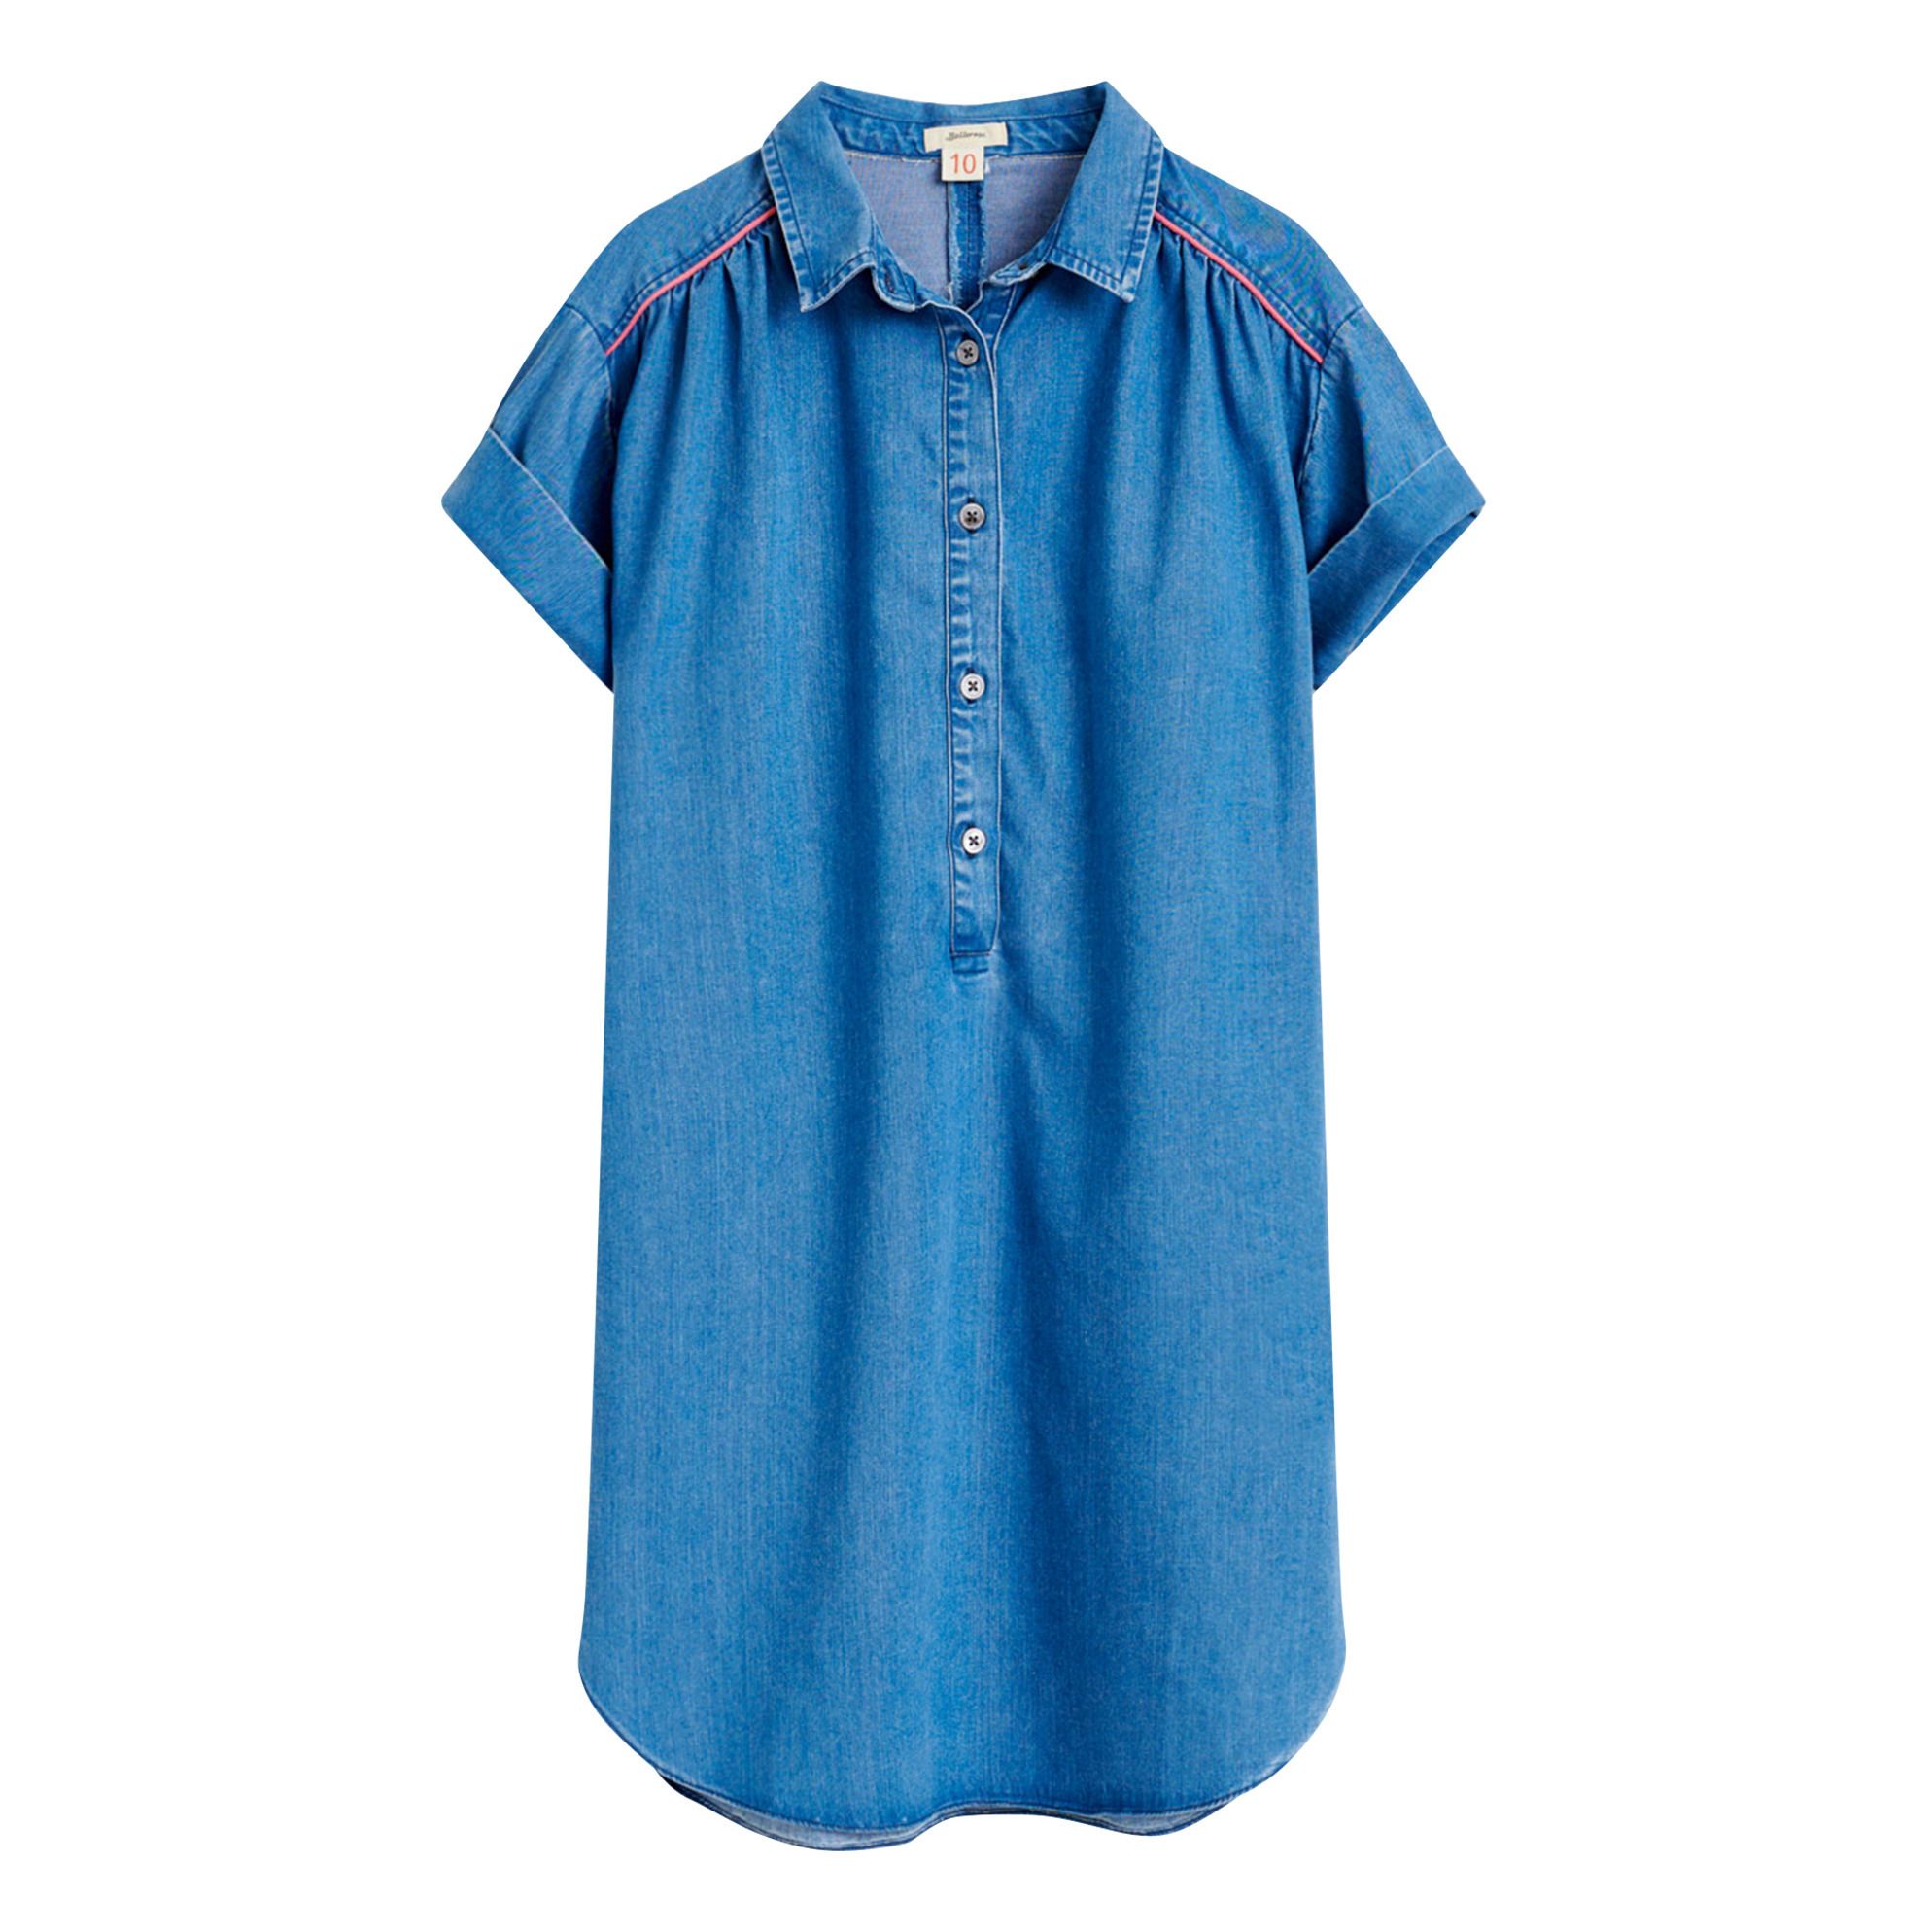 Bellerose - Robe Chemise Adjani - Fille - Bleu jean